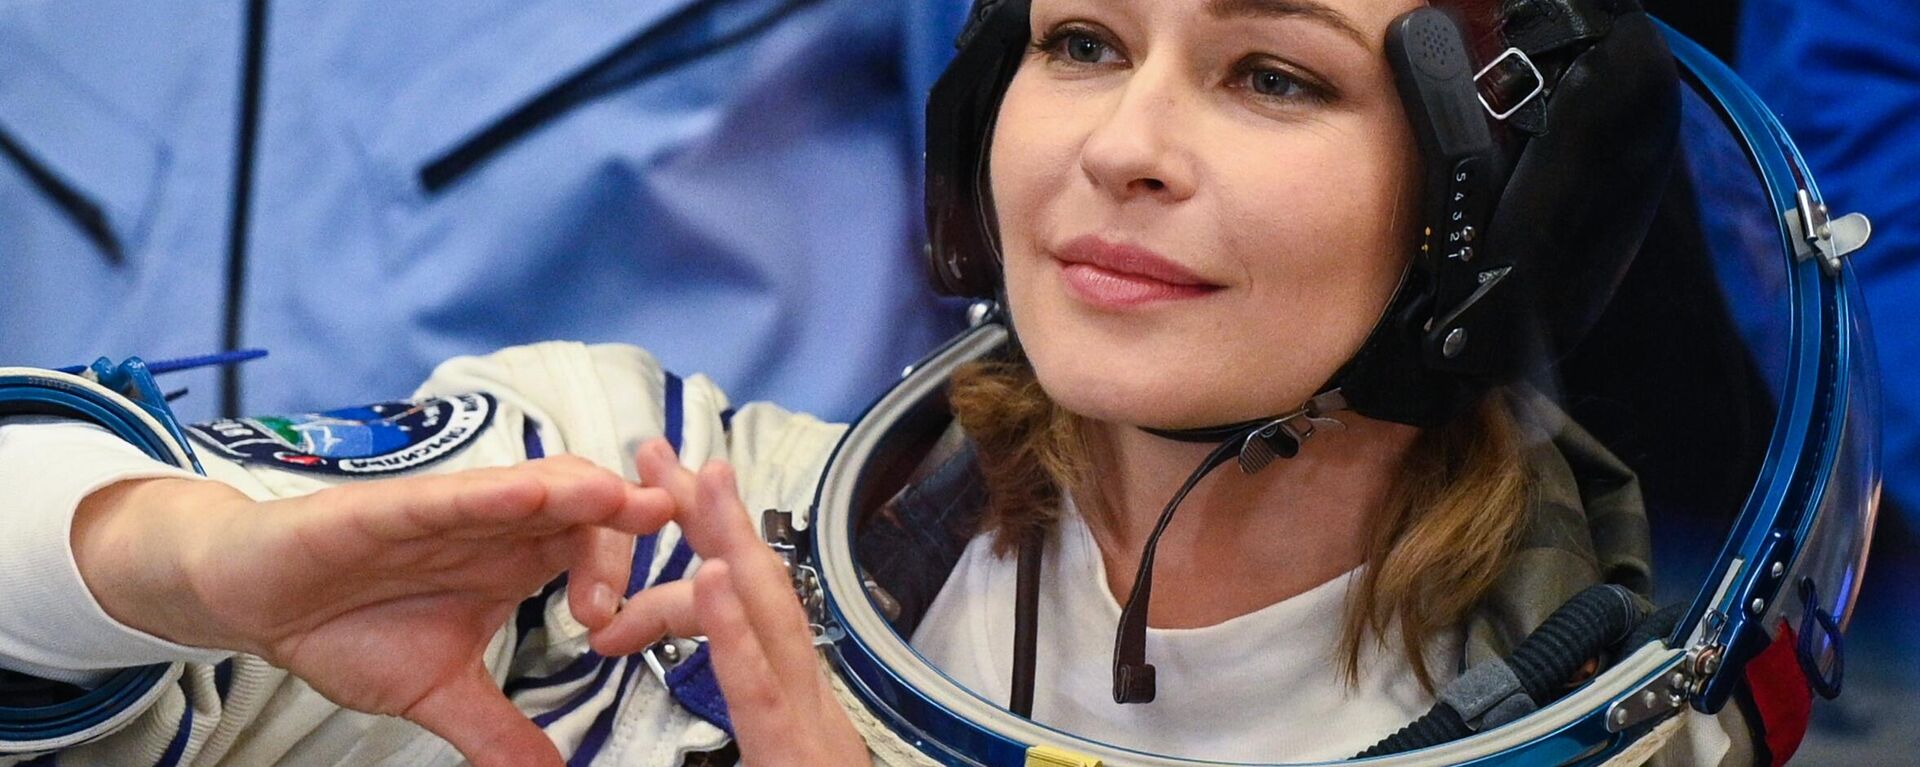 Yulia Peresild, actriz rusa, antes de partir a la EEI desde el cosmódromo de Baikonur, el 5 de octubre del 2021 - Sputnik Mundo, 1920, 16.05.2022